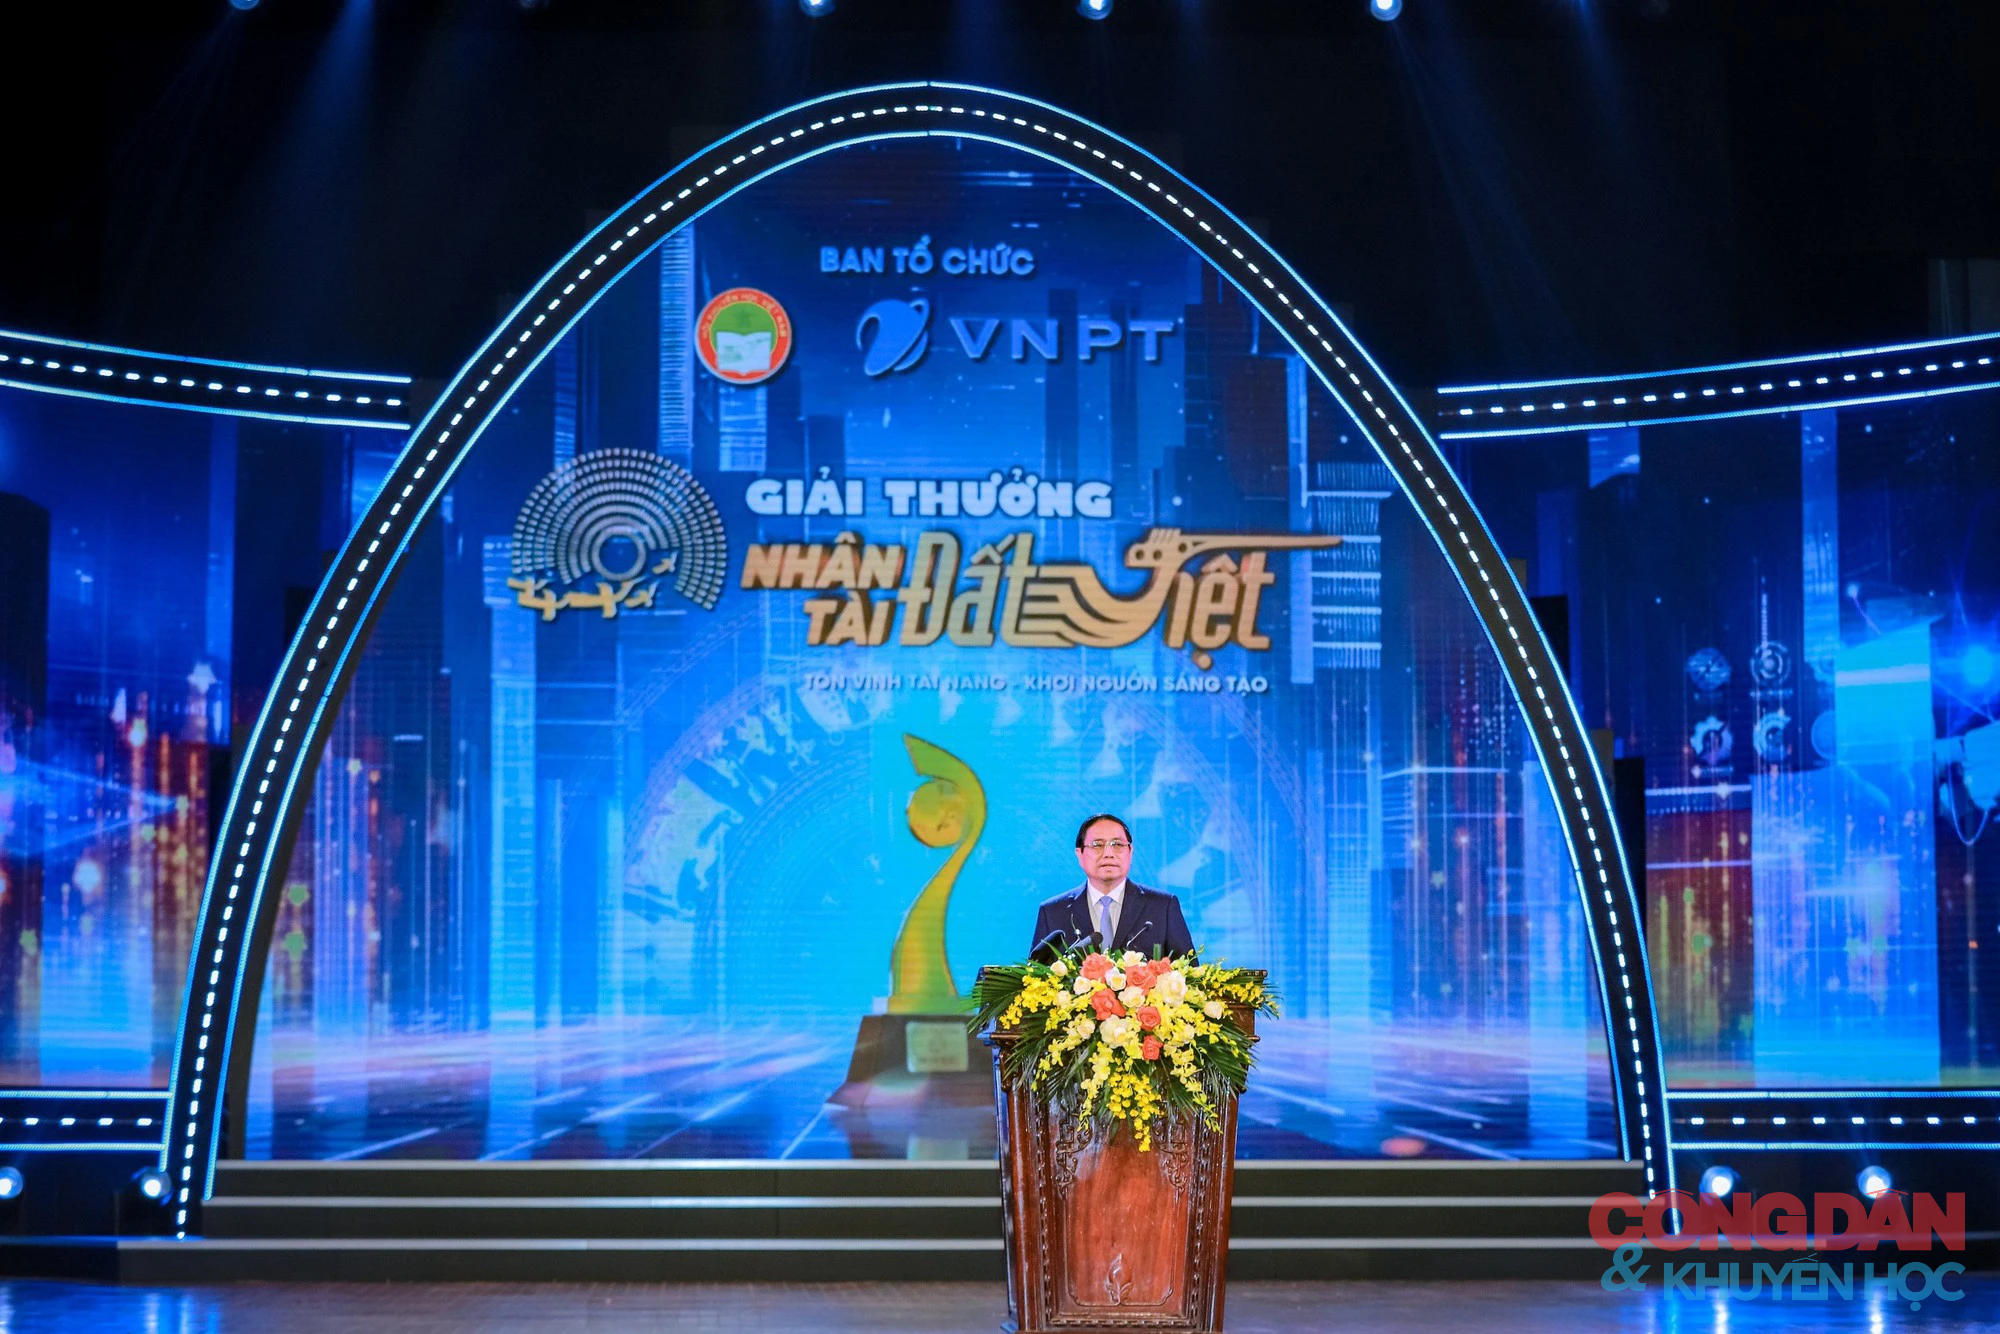 Thủ tướng Phạm Minh Chính: Giải thưởng Nhân tài Đất Việt khẳng định trí tuệ Việt Nam với khu vực và thế giới- Ảnh 2.